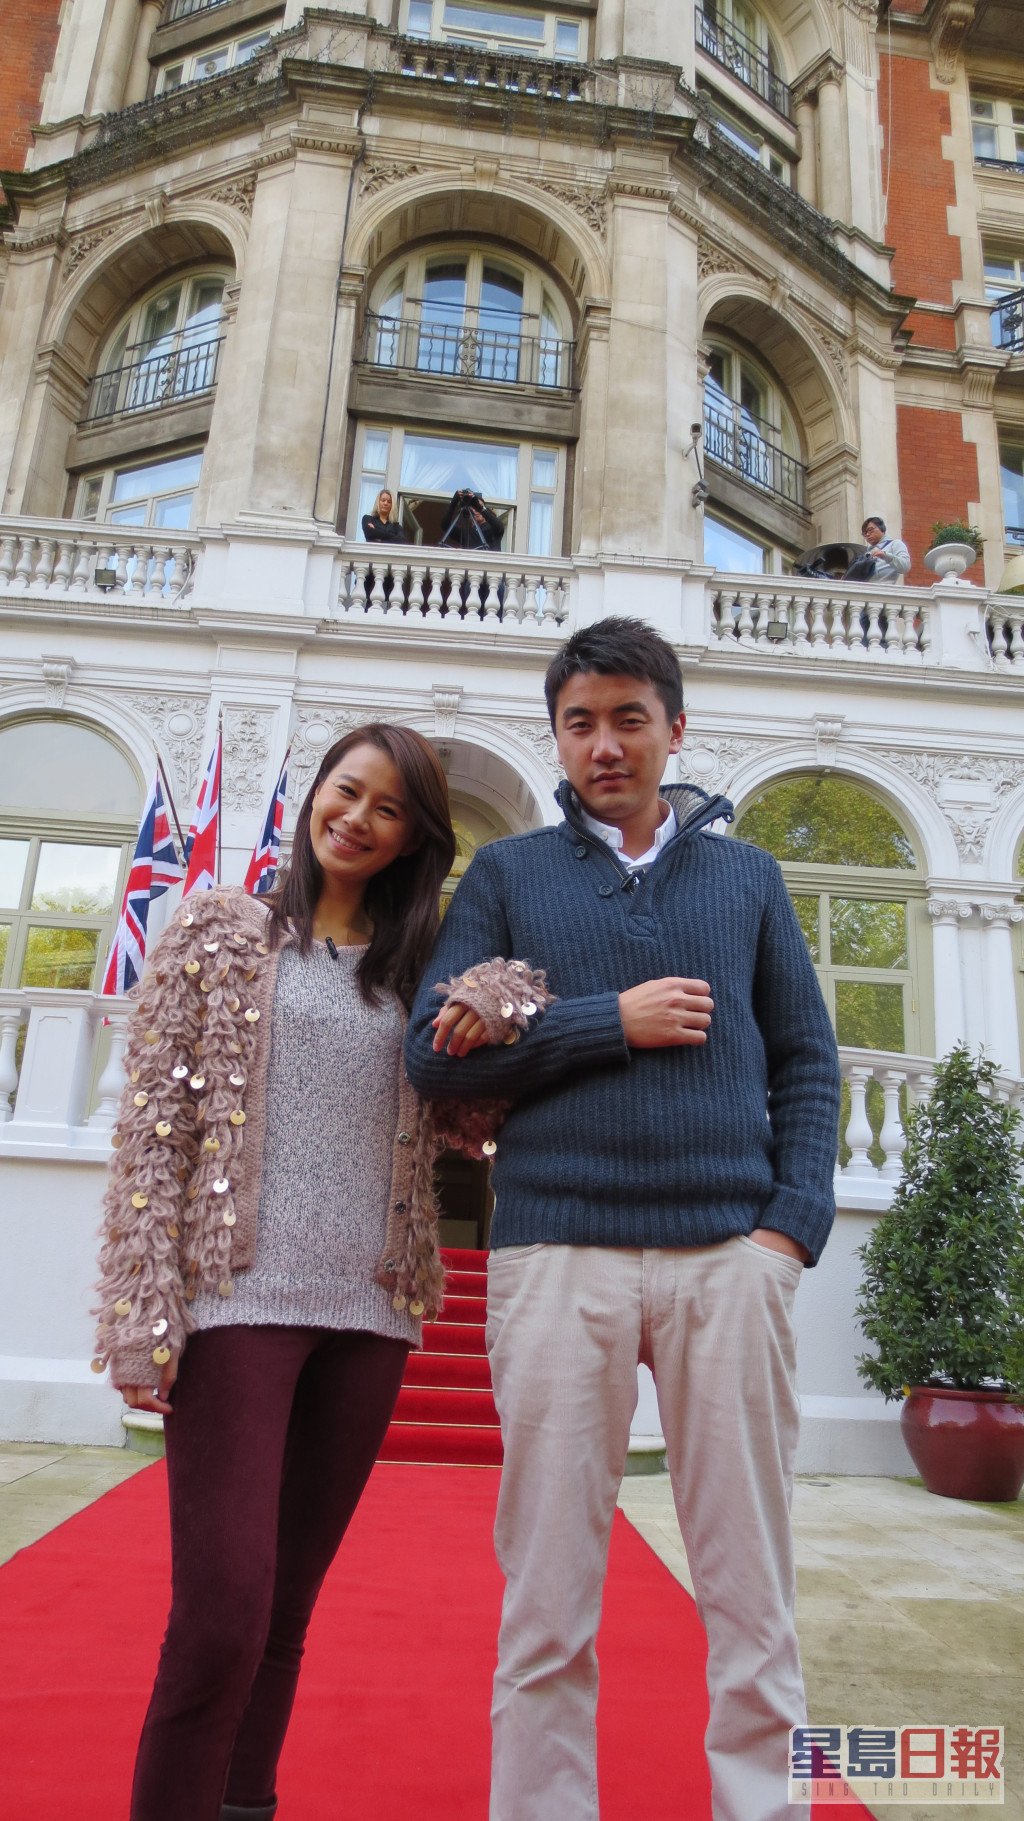 转投TVB初期，两人《走过浮华大地》大受欢迎，两人更成为《万千星辉颁奖典礼2013》「最佳节目主持」。 现时洪永城与黄翠如均主力拍剧。